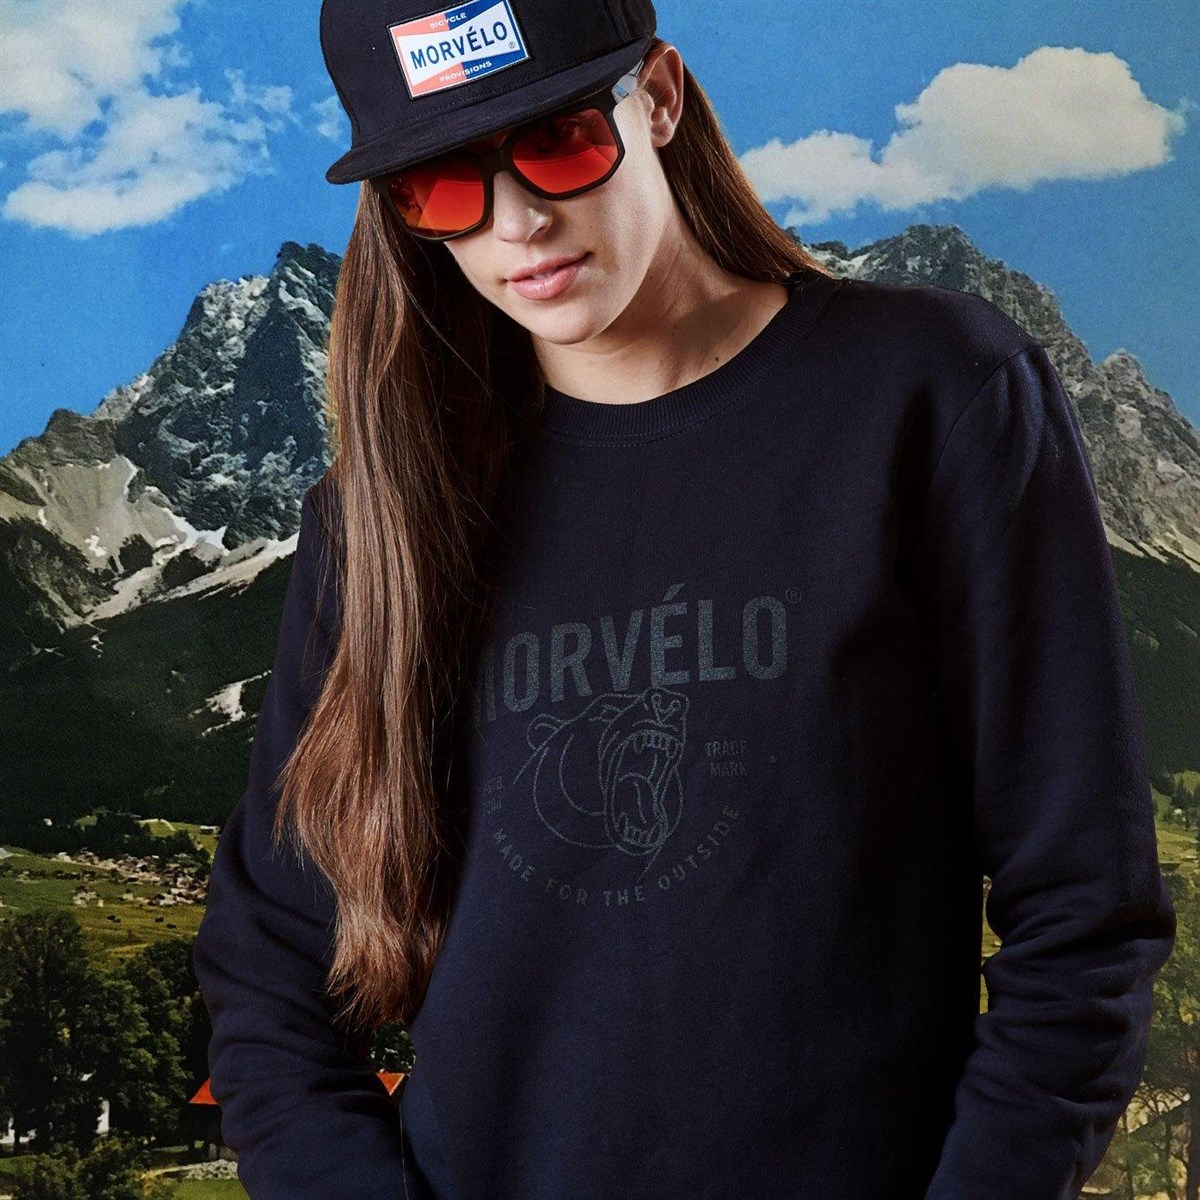 Morvelo Sweatshirt product image